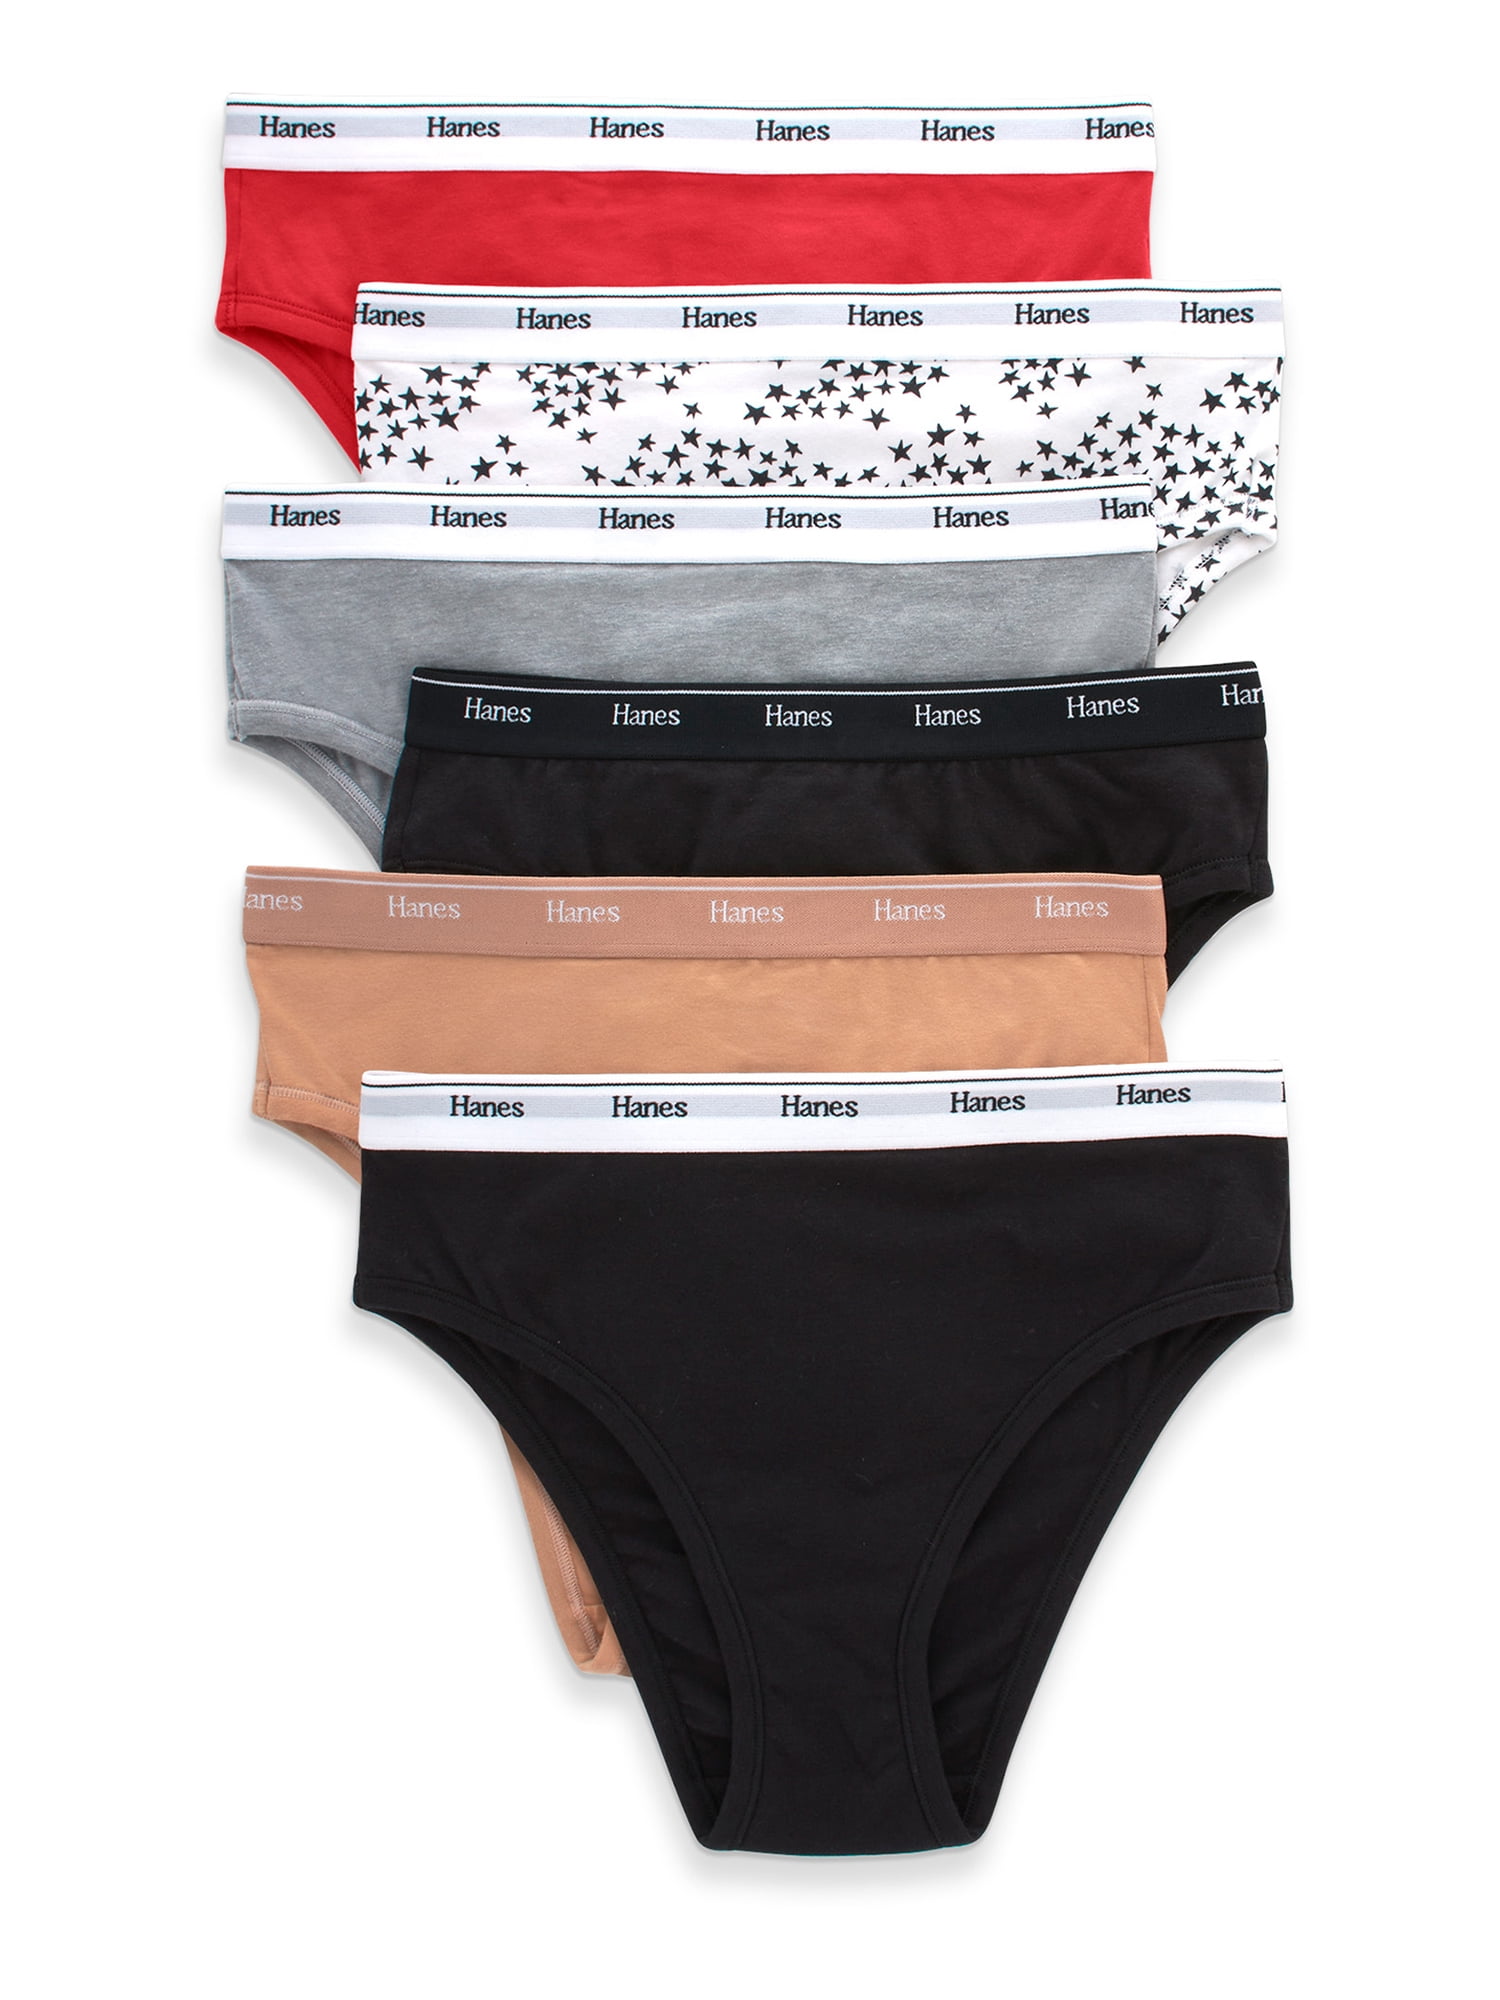 Hanes Originals Women's Hi-Leg Underwear, Breathable Cotton Stretch, 6 ...